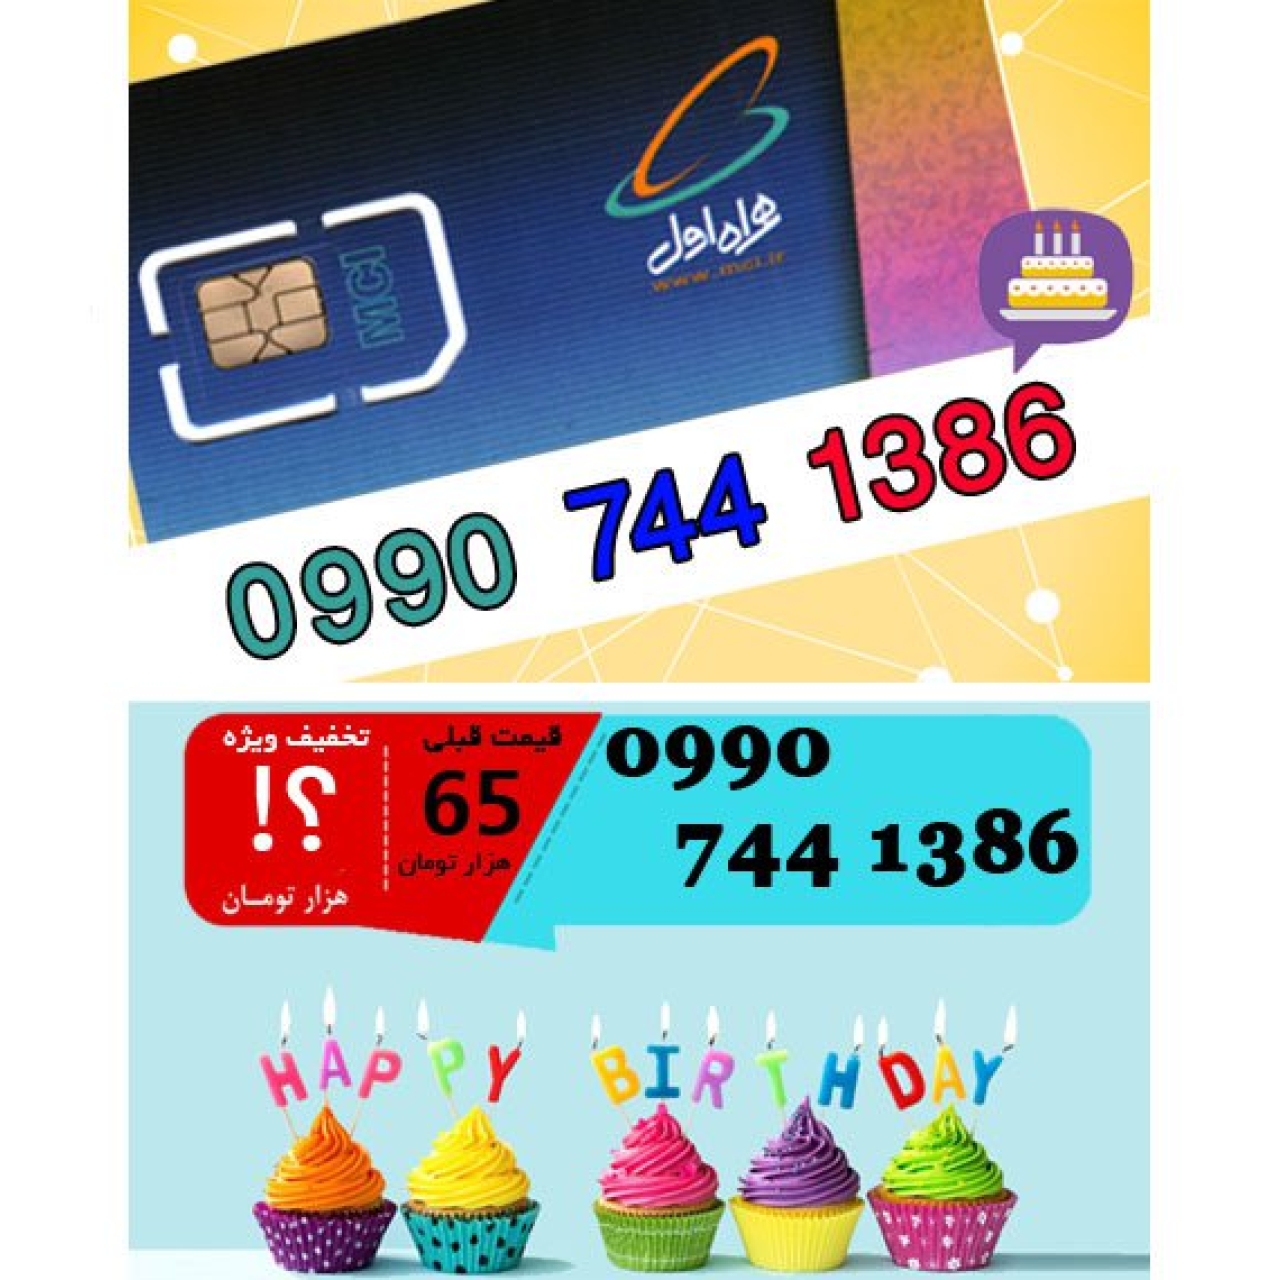 سیم کارت اعتباری همراه اول 09907441386 تاریخ تولد